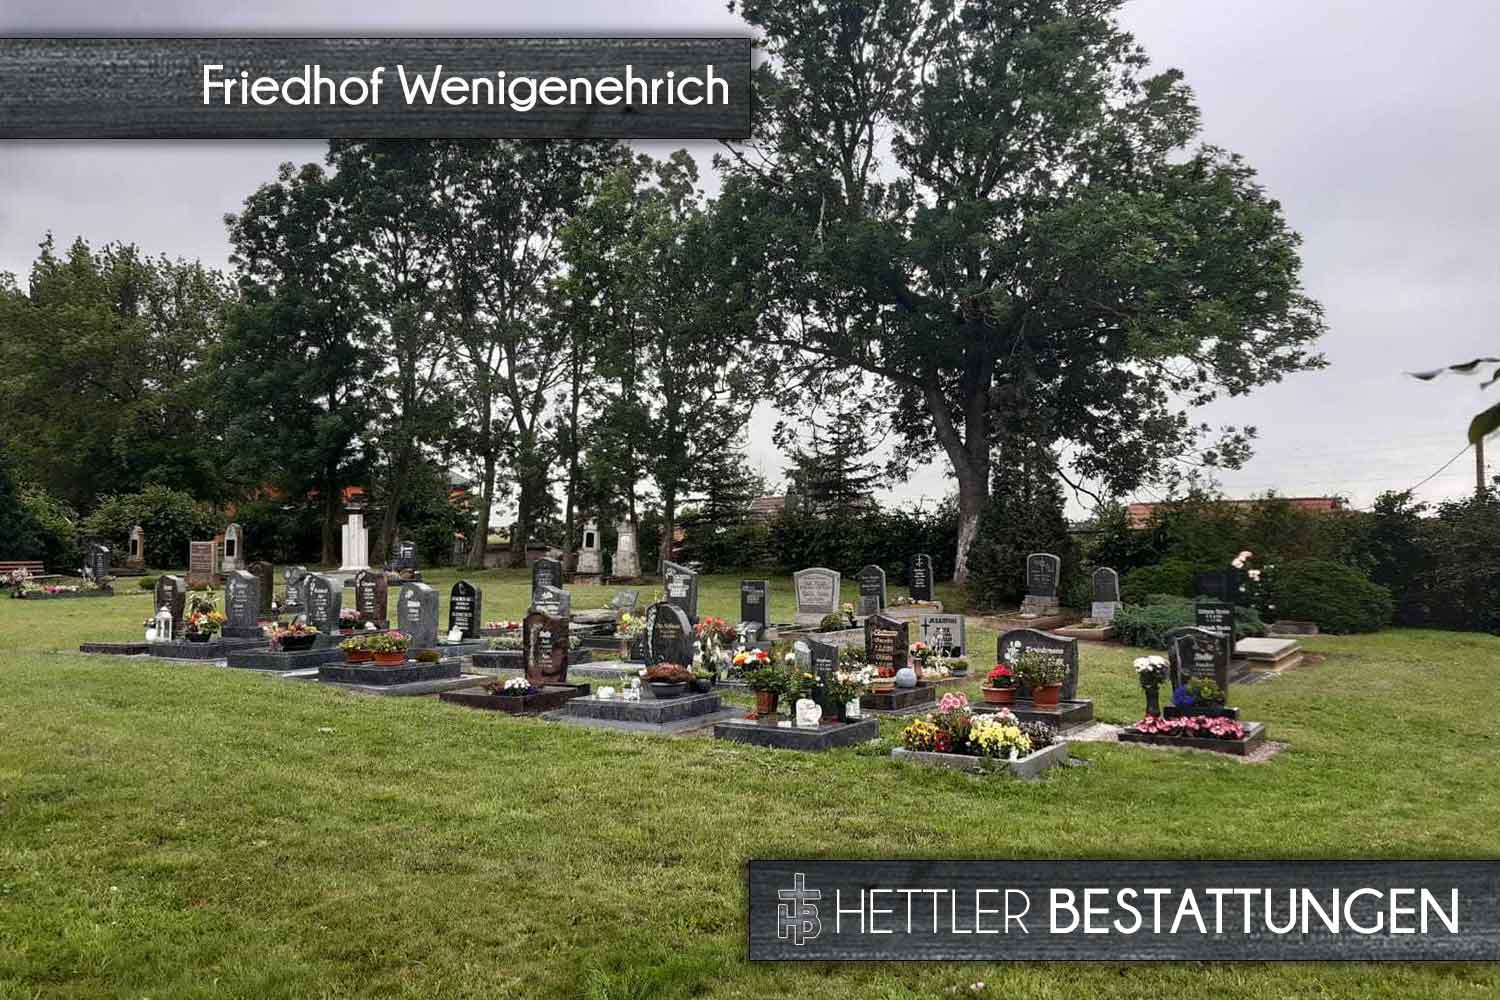 Friedhof in Wenigenehrich. Ihr Ort des Abschieds mit Hettler Bestattungen.